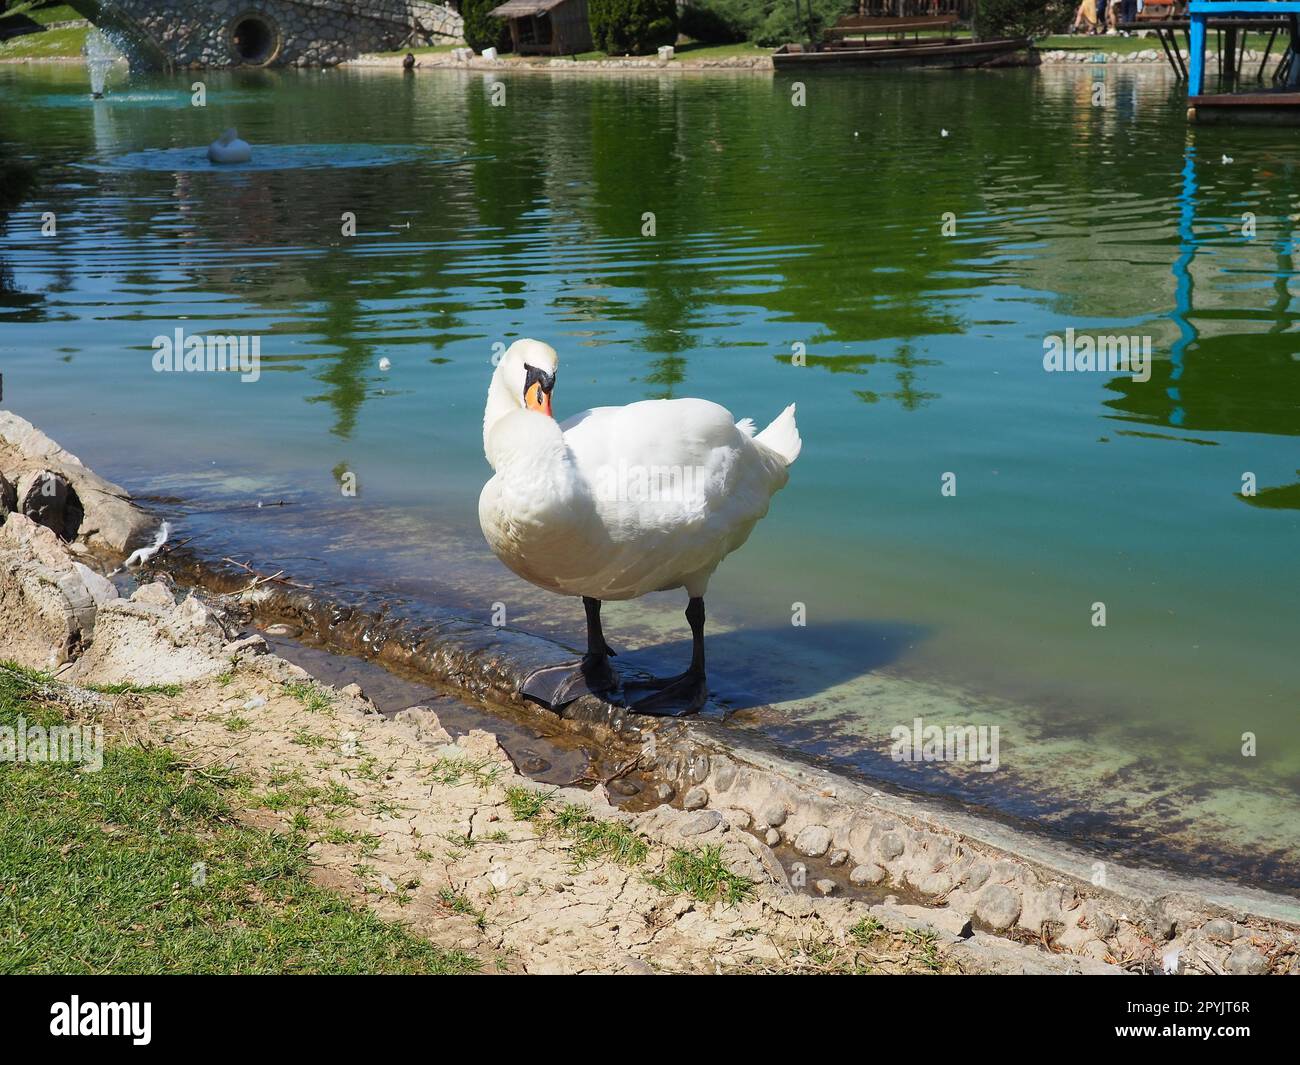 Cigno bianco sulla riva del serbatoio. Un uccello vicino all'acqua sta pulendo le sue piume. Stanisici, Bijelina, Bosnia ed Erzegovina, uno zoo in un villaggio etno. Fauna europea Foto Stock